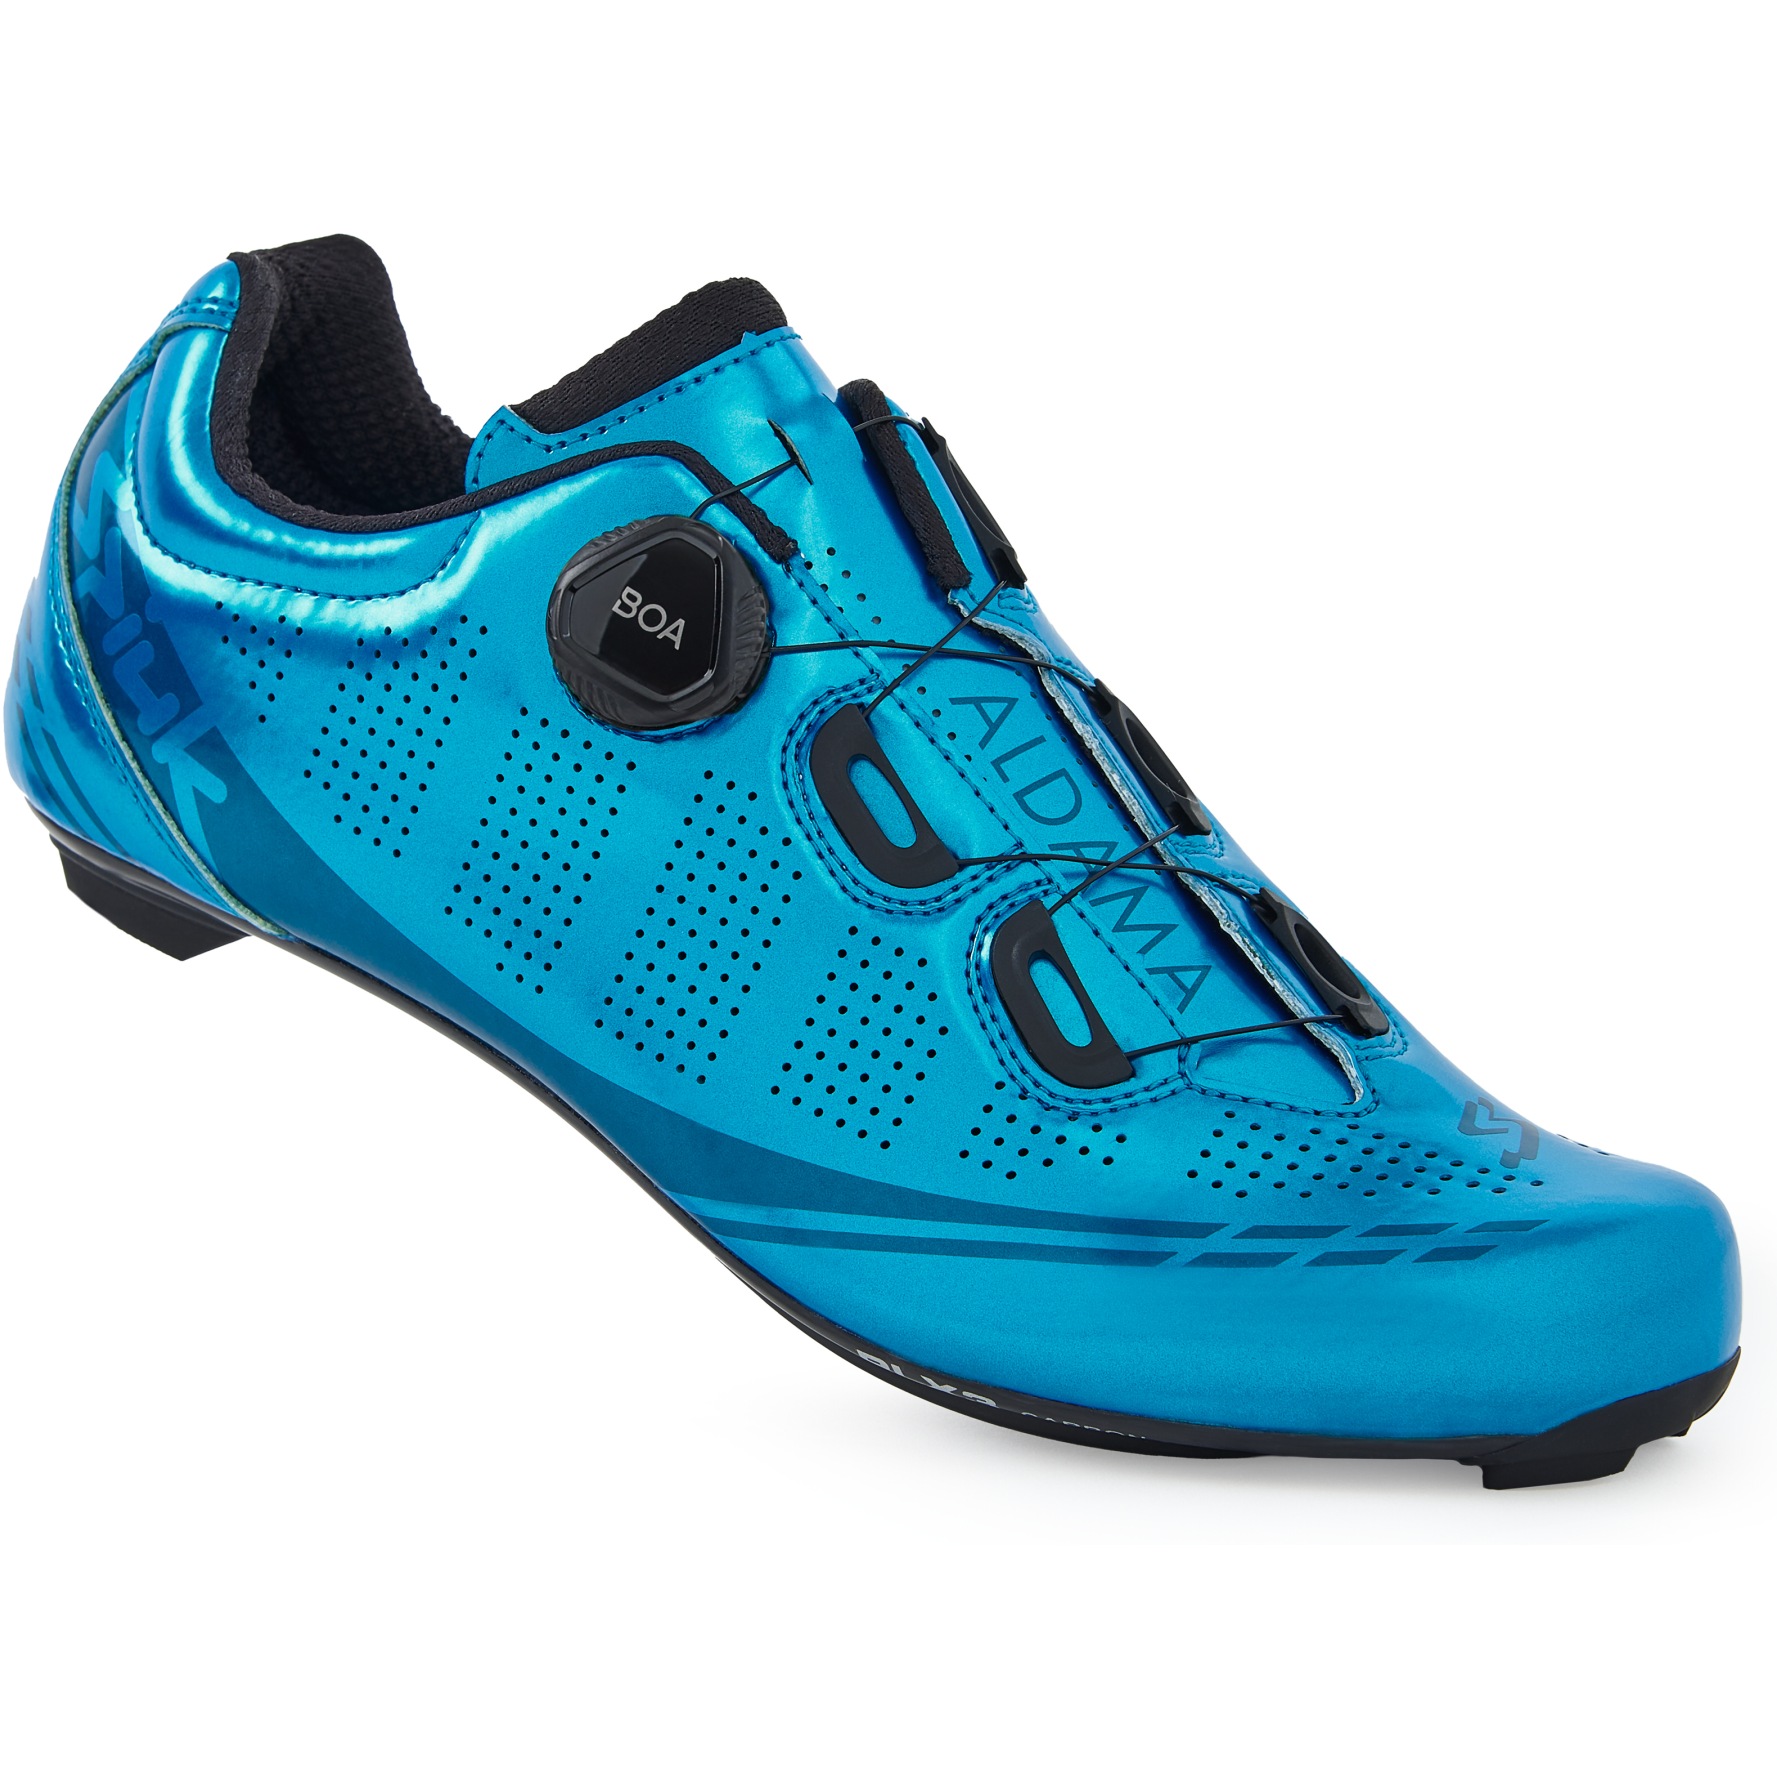 Produktbild von Spiuk Aldama Carbon Rennradschuhe - blau